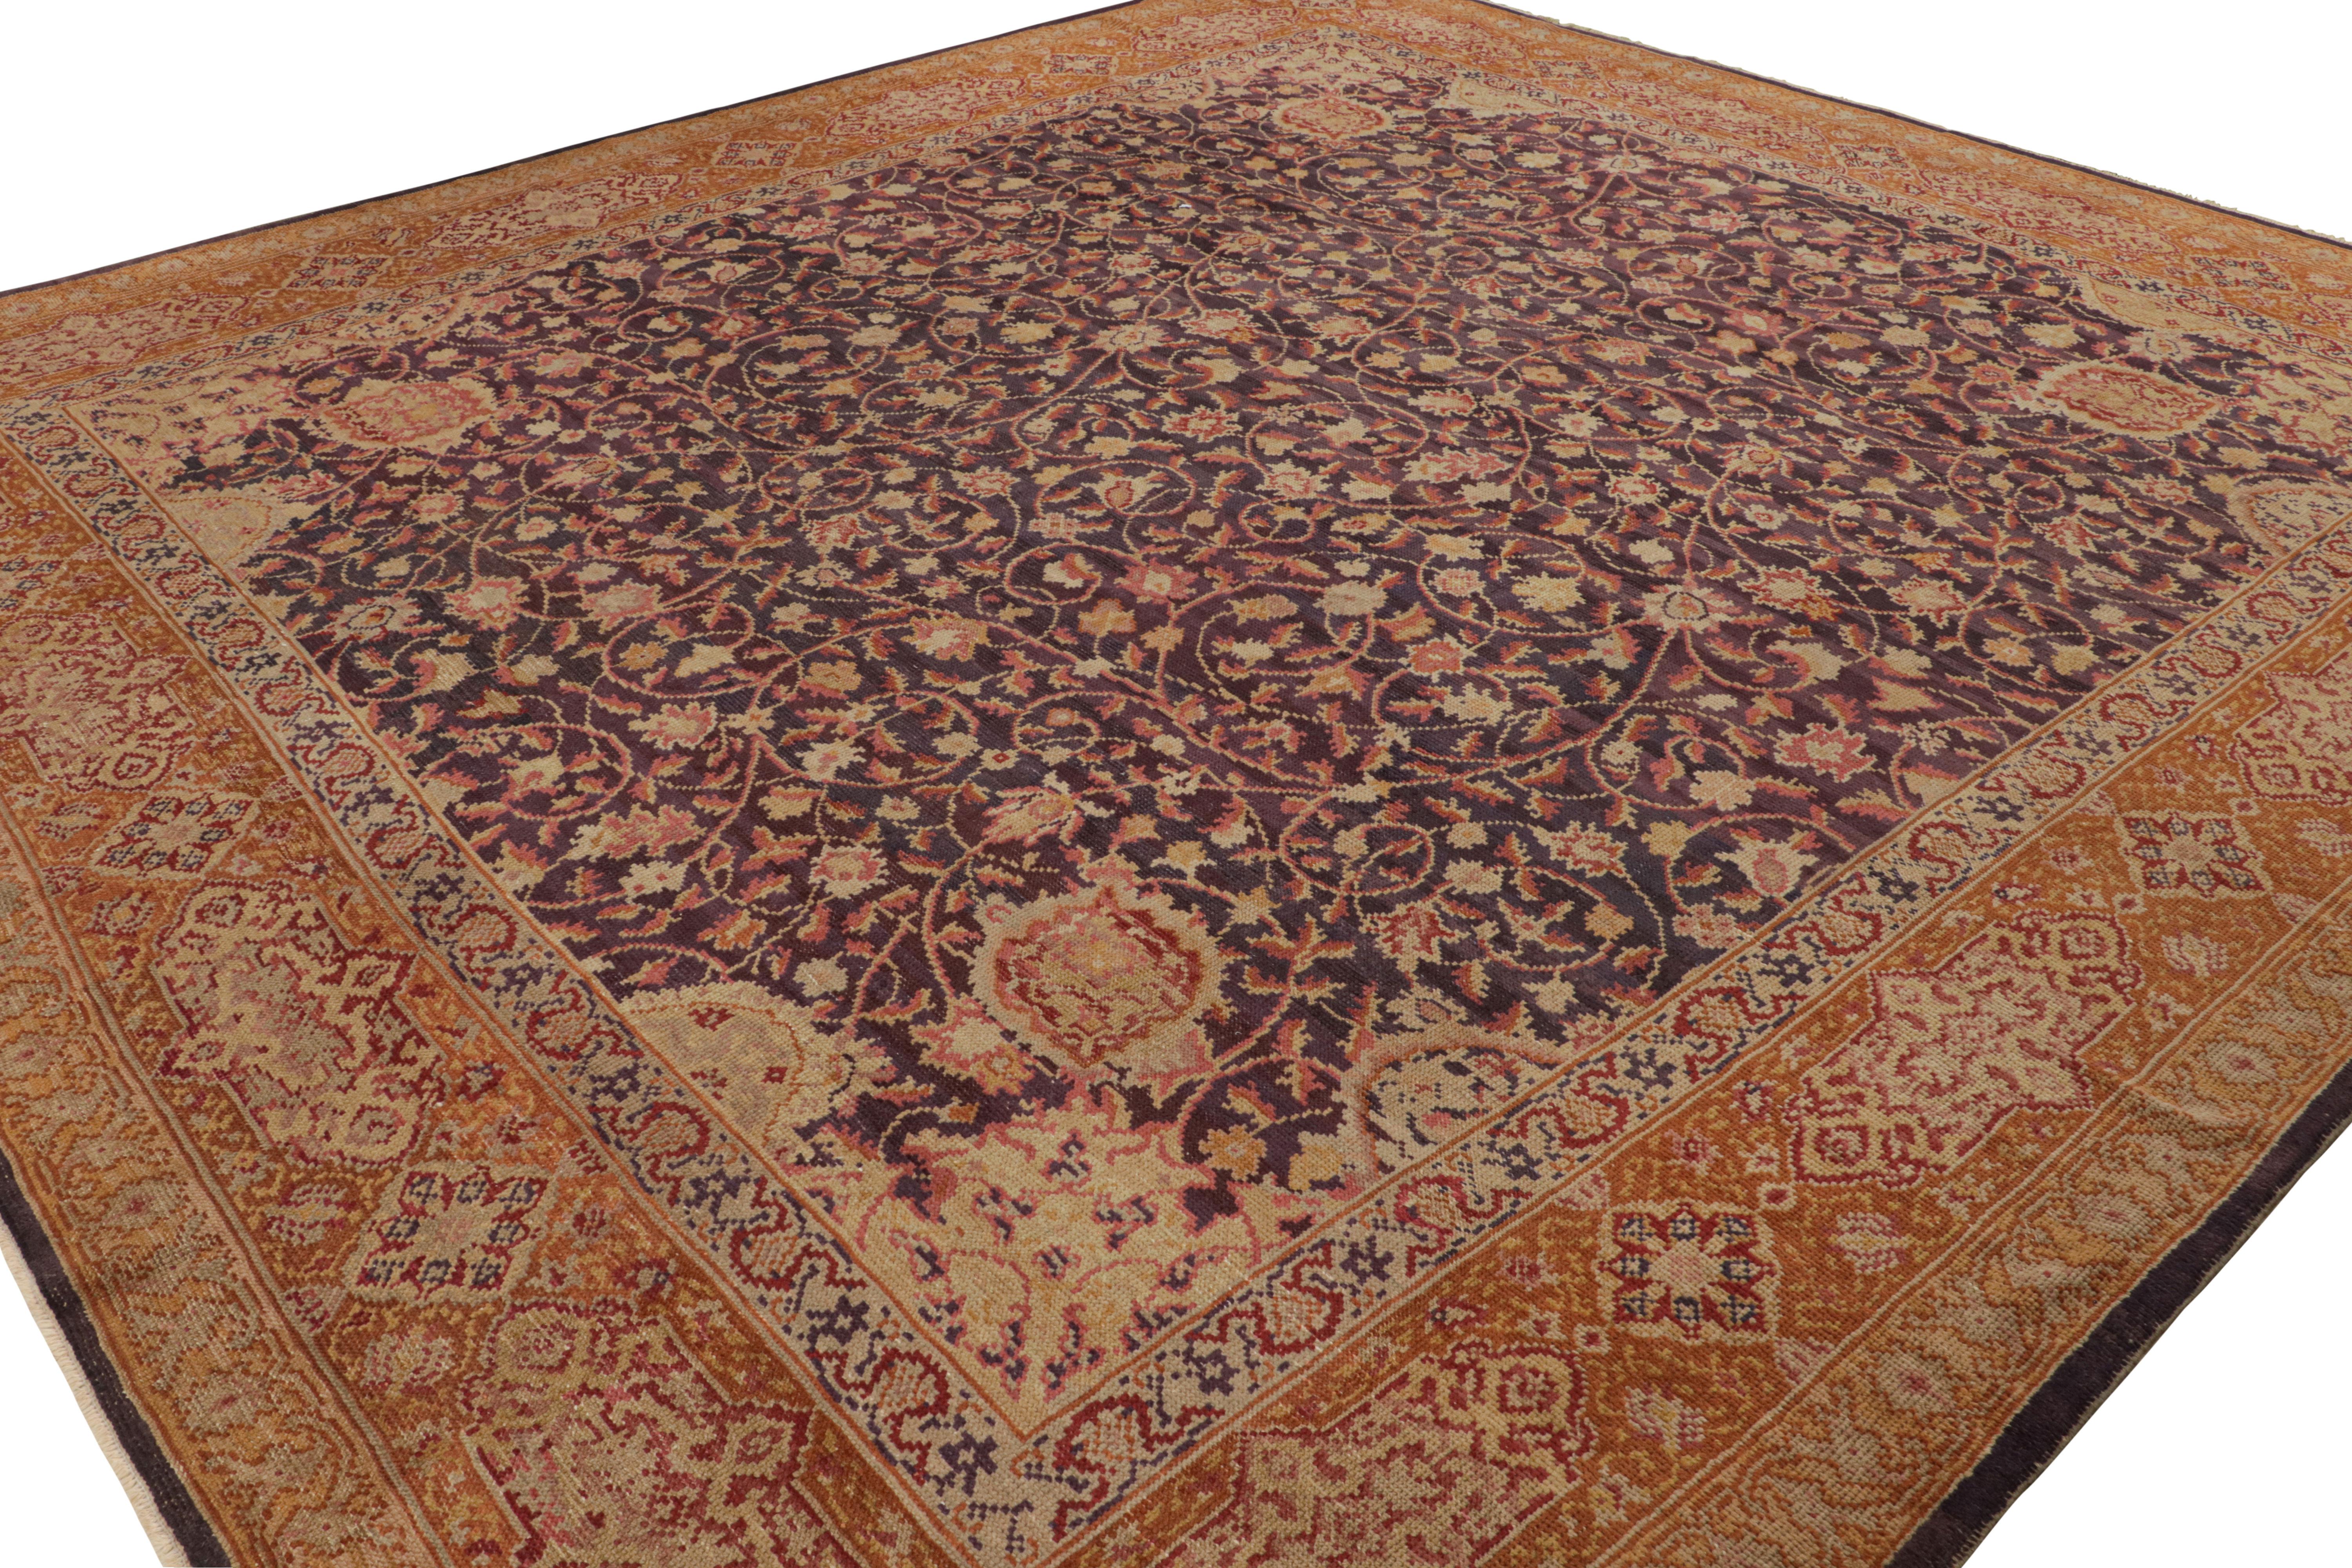 Dieser antike Axminster-Teppich stammt aus Irland (ca. 1910-1920), ist 12'8 x 13'8 groß und aus handgeknüpfter Wolle gefertigt. Beige und Orange sind die vorherrschenden Farben, wobei ein auffälliger blauer Feldhintergrund die Rottöne ergänzt, die